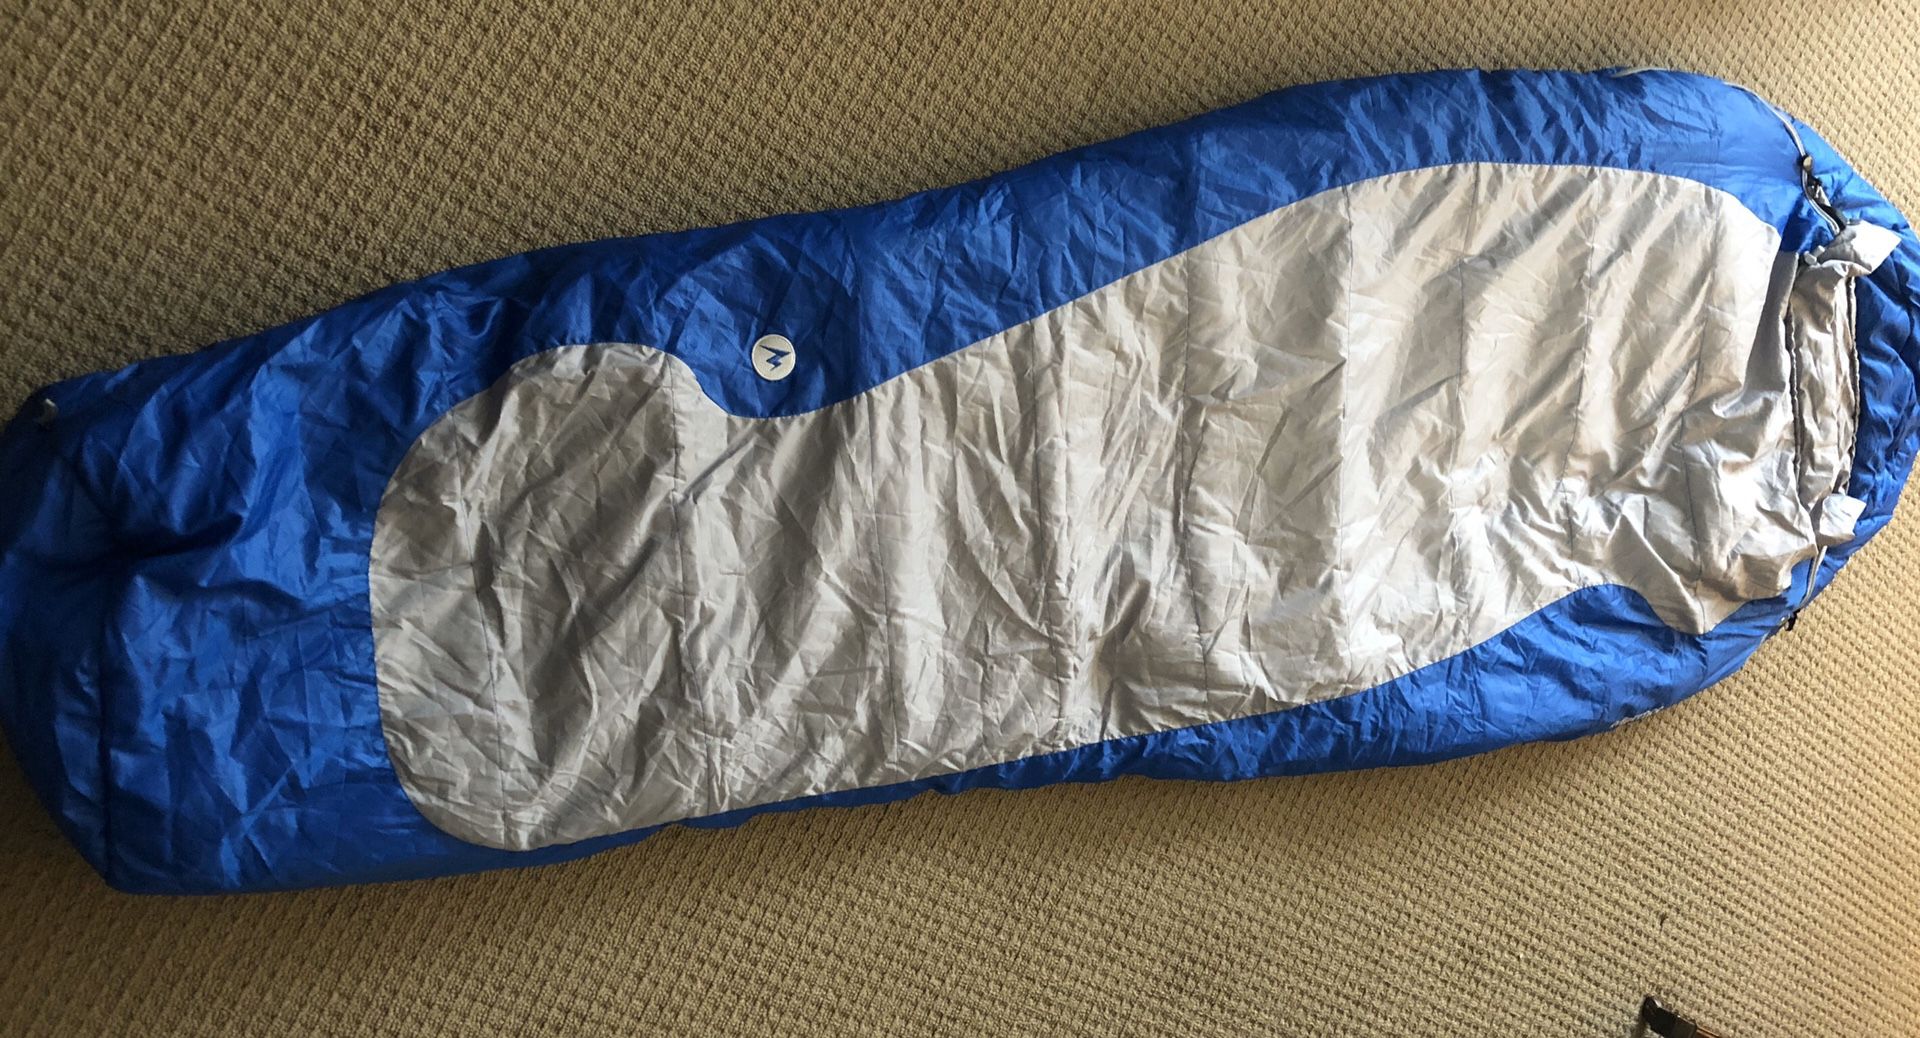 Marmot sleeping bag - 15F $40